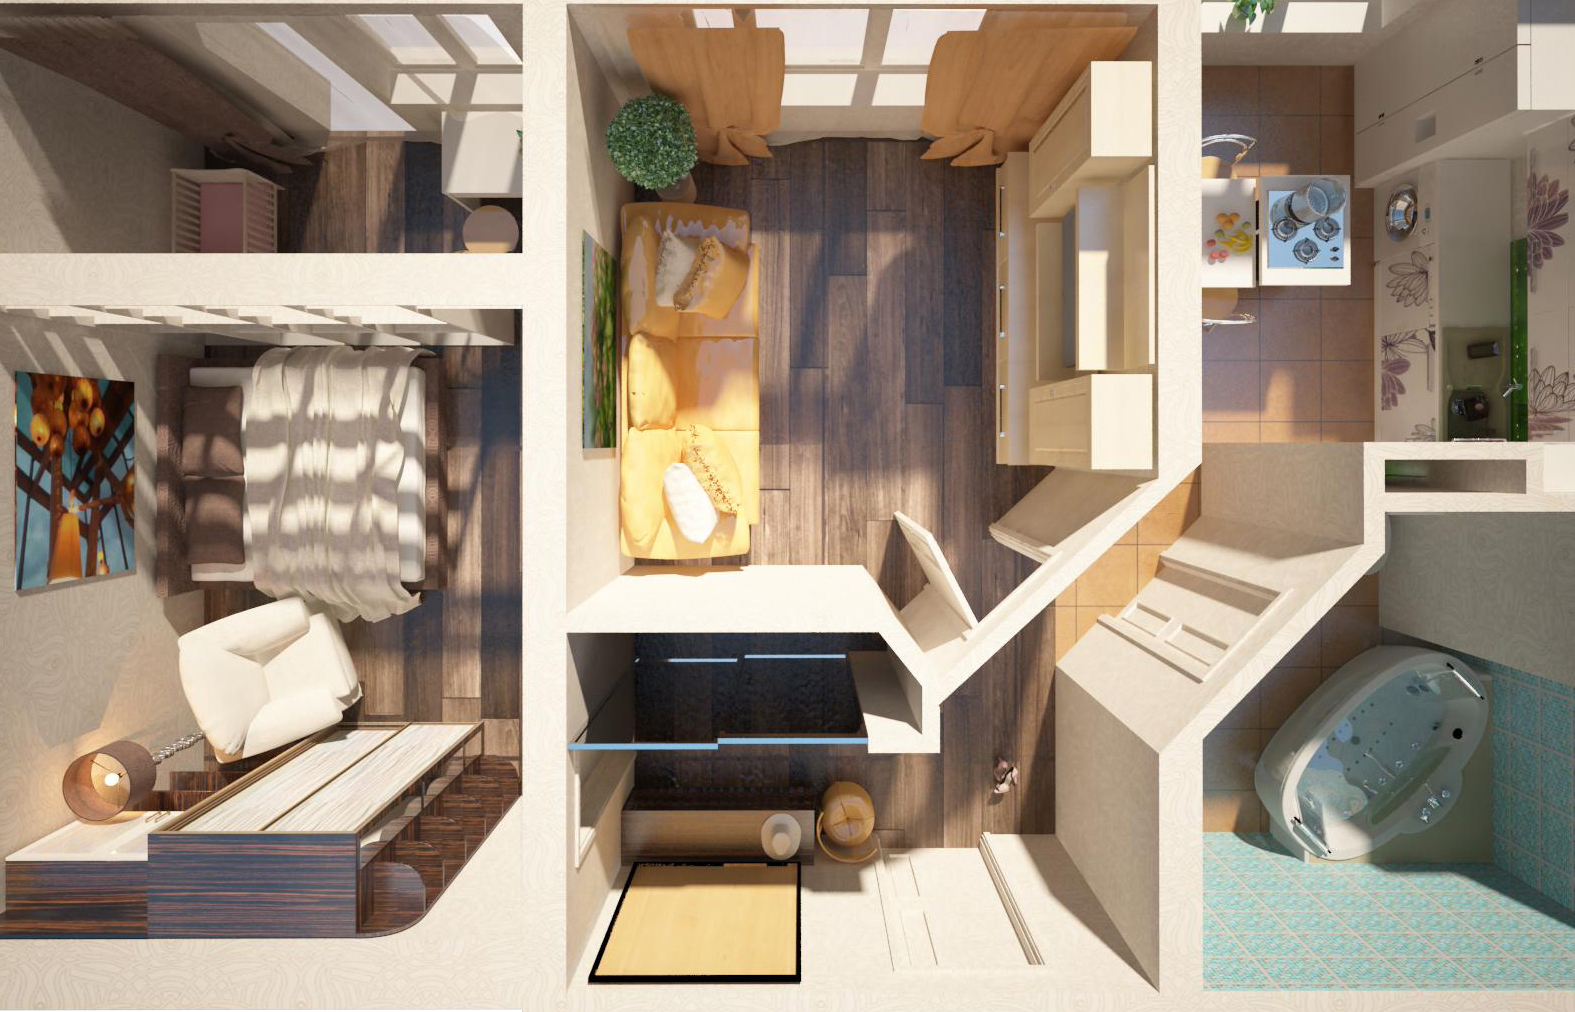 Дизайн интерьера двухкомнатной квартиры: планировка, зонирование, стилевое решение